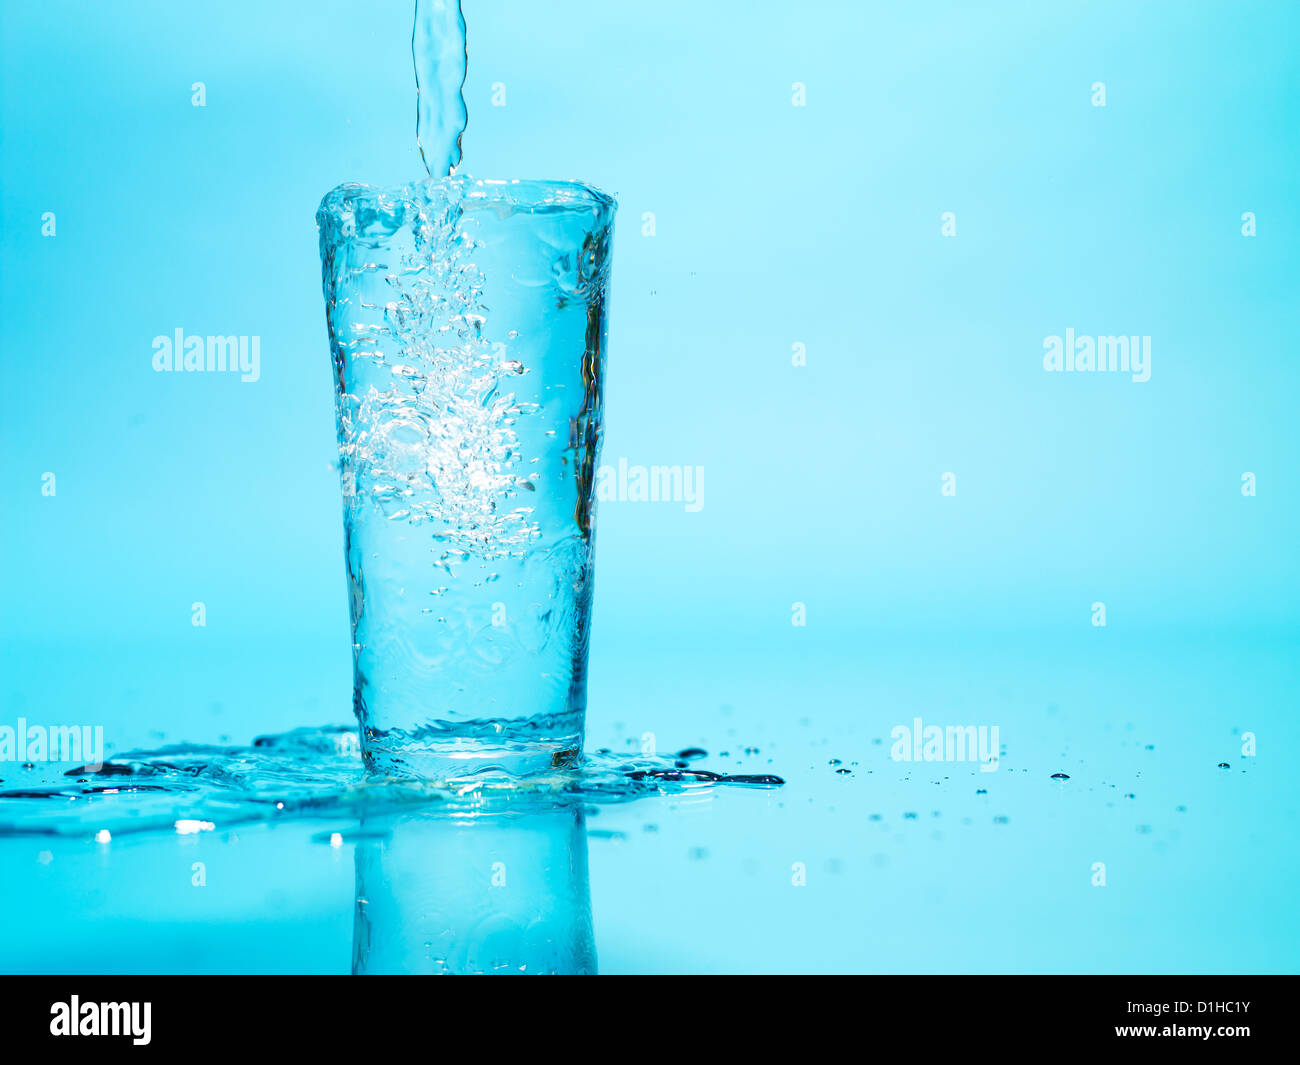 El agua que desborda en un vaso Foto de stock